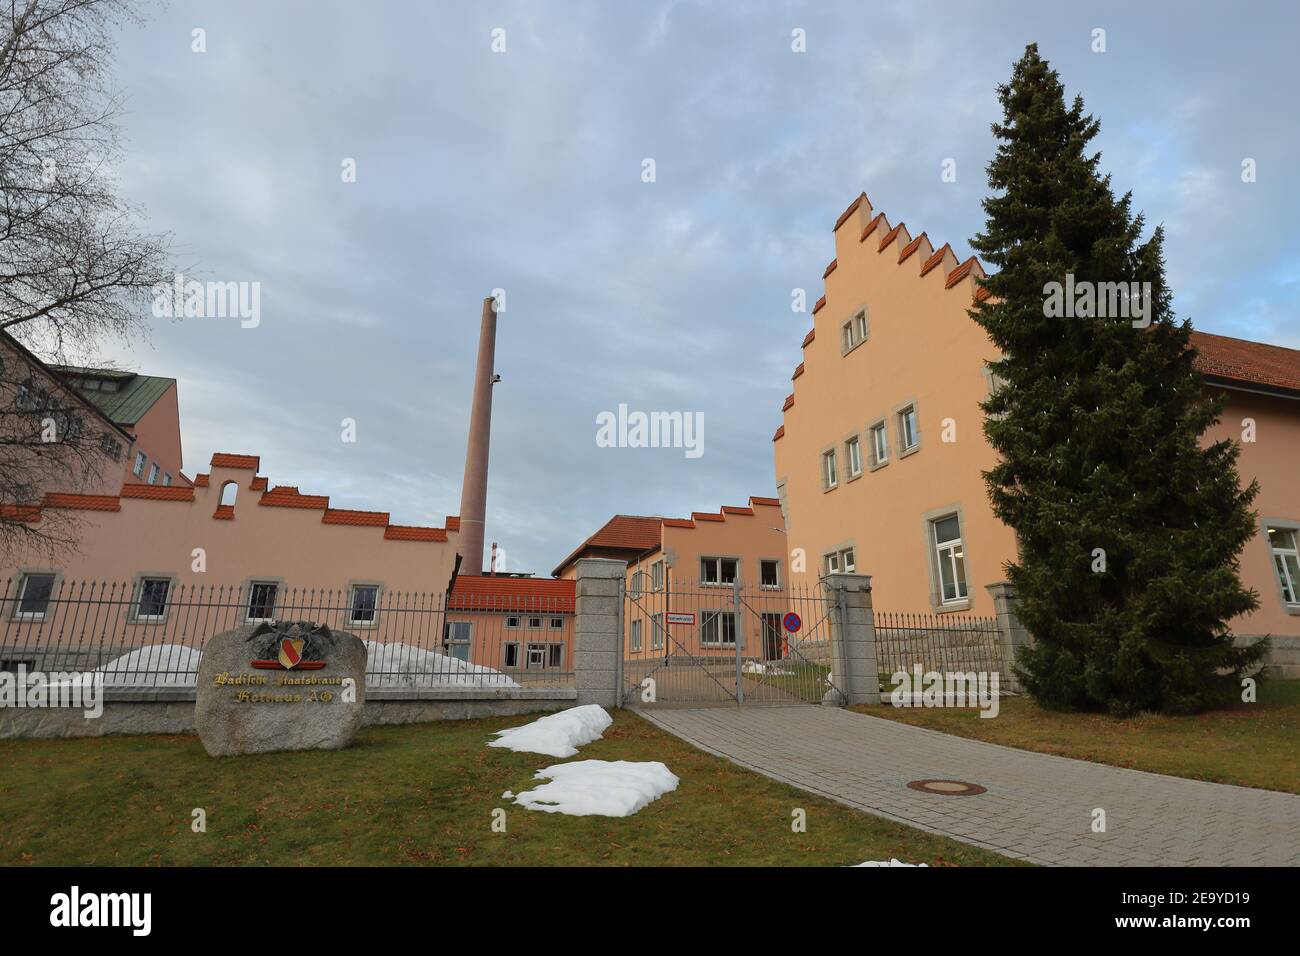 ALLEMAGNE, FORÊT NOIRE, GRAFENHAUSEN - 19 DÉCEMBRE 2019 : bâtiments, cheminée et bloc avec emblème de la brasserie Rothaus Banque D'Images